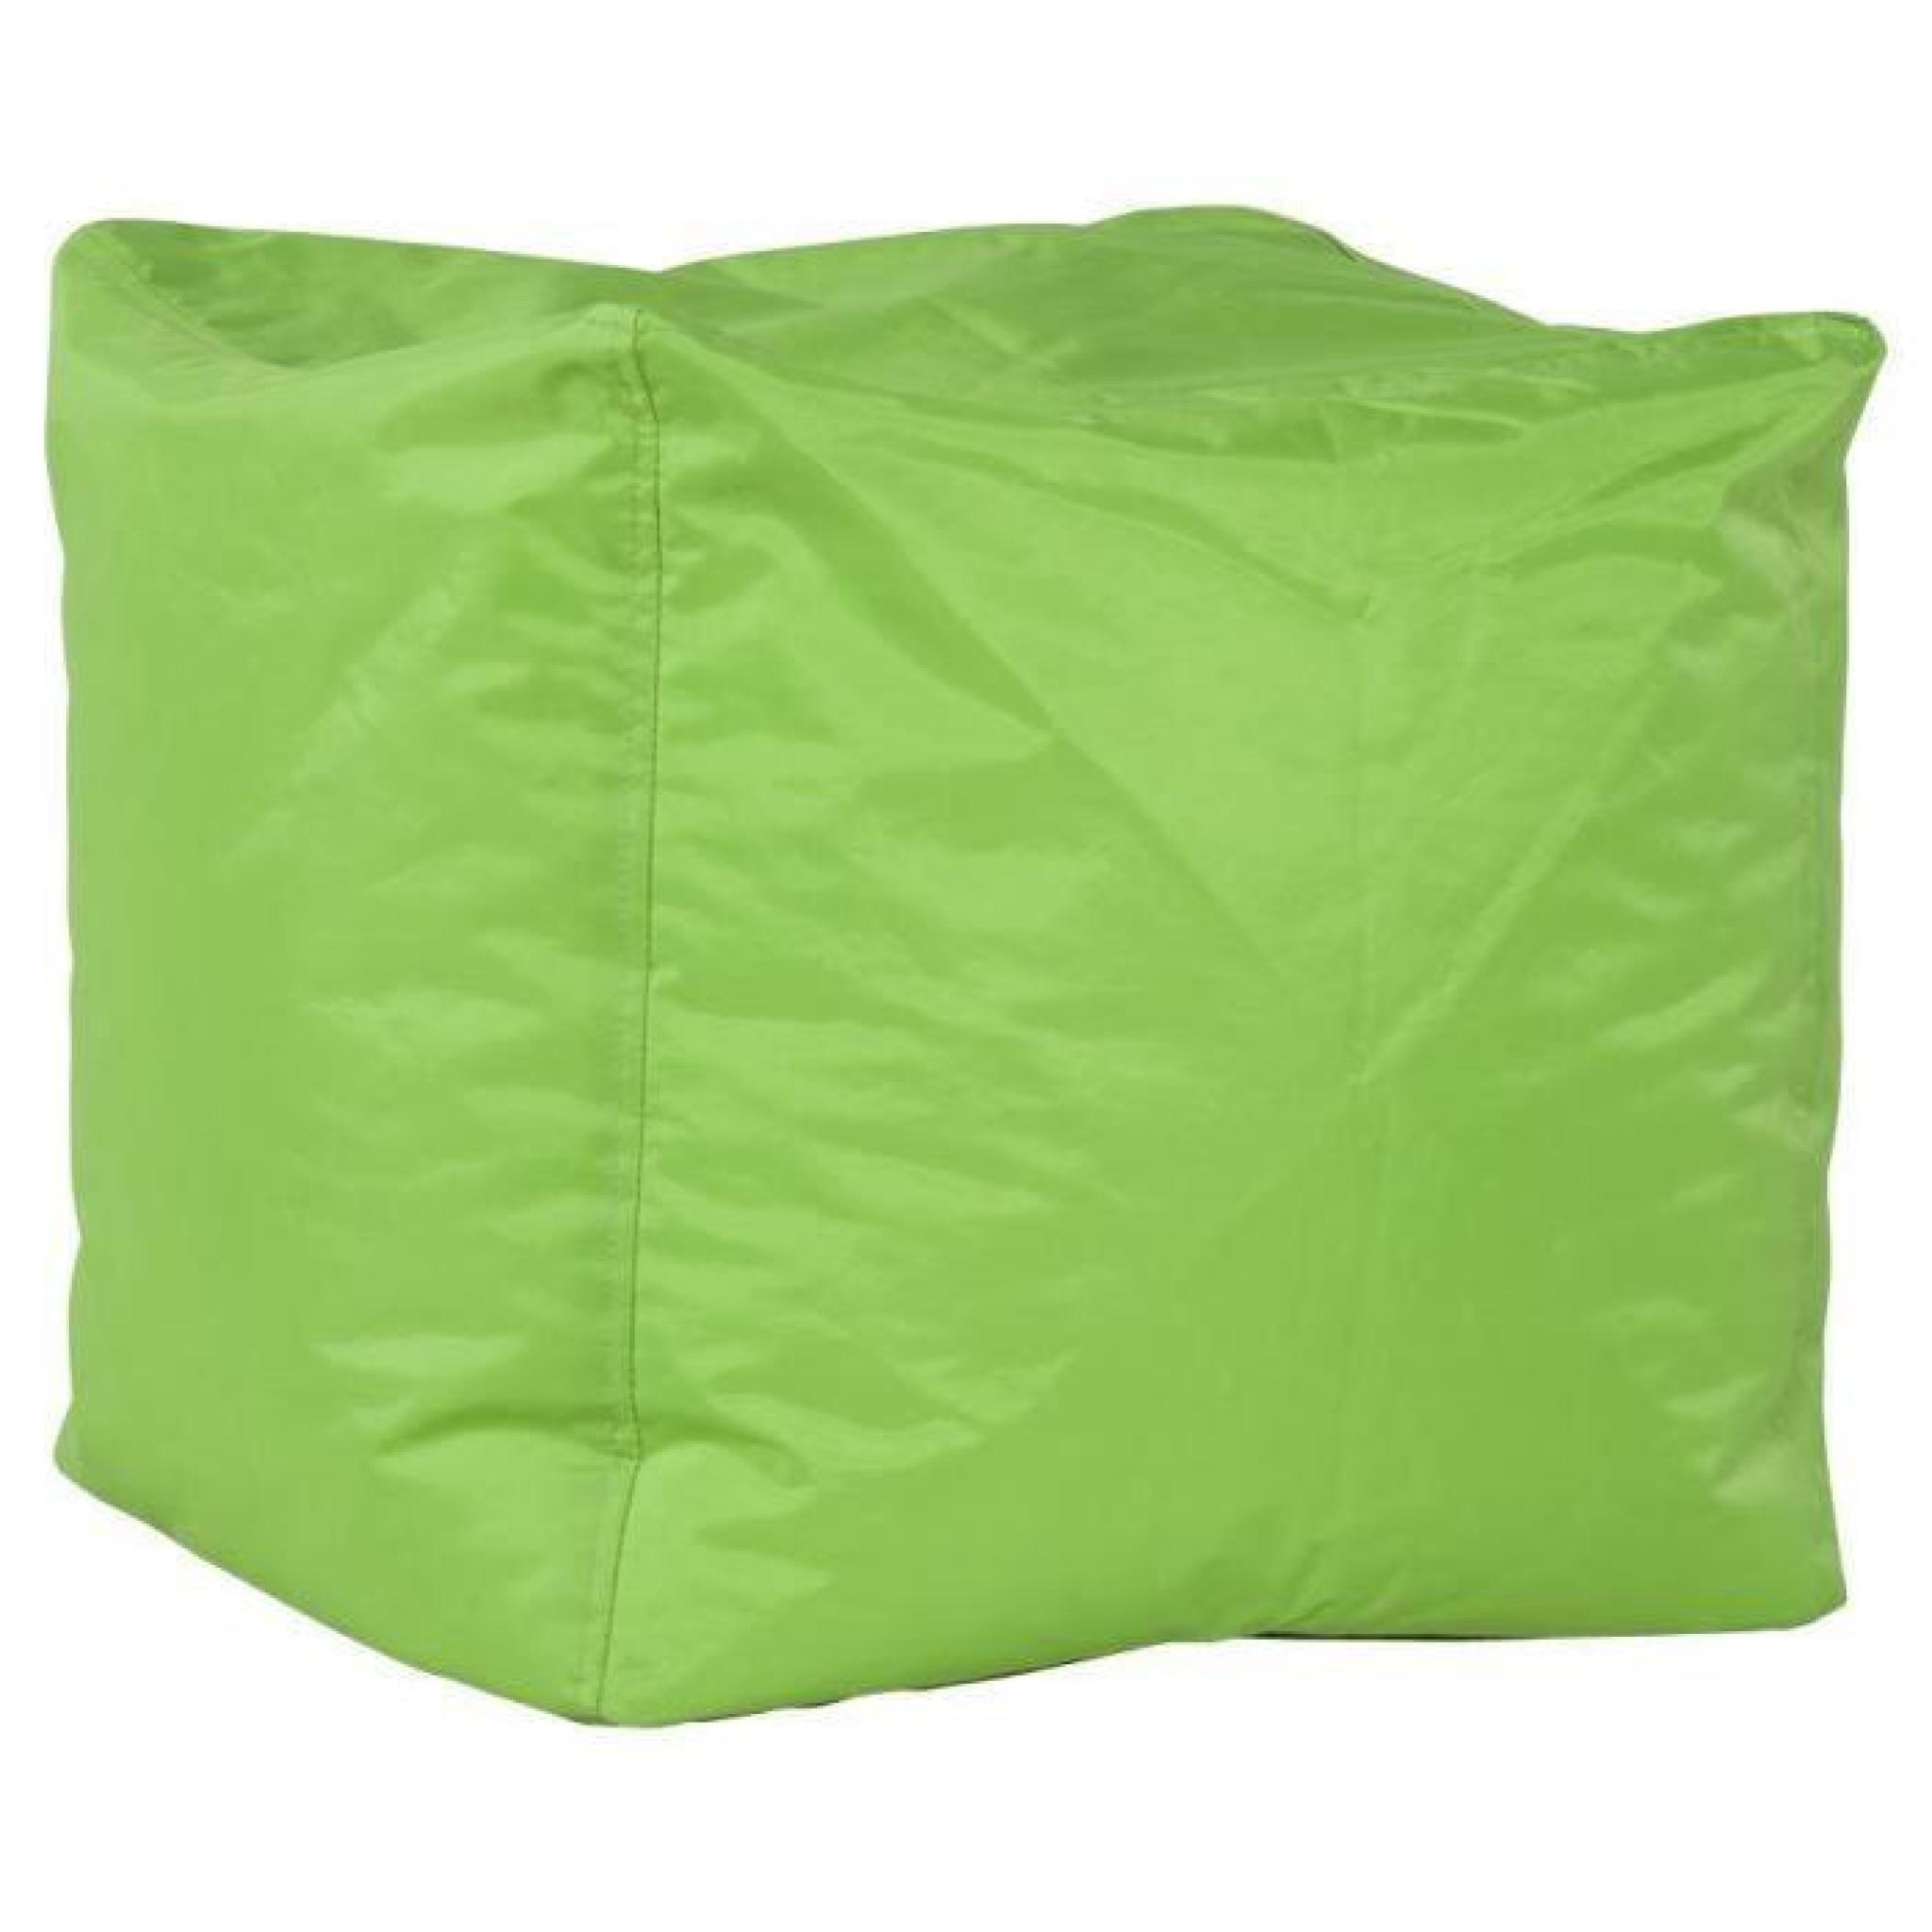 Pouf design en textile de couleur verte LS00560GE